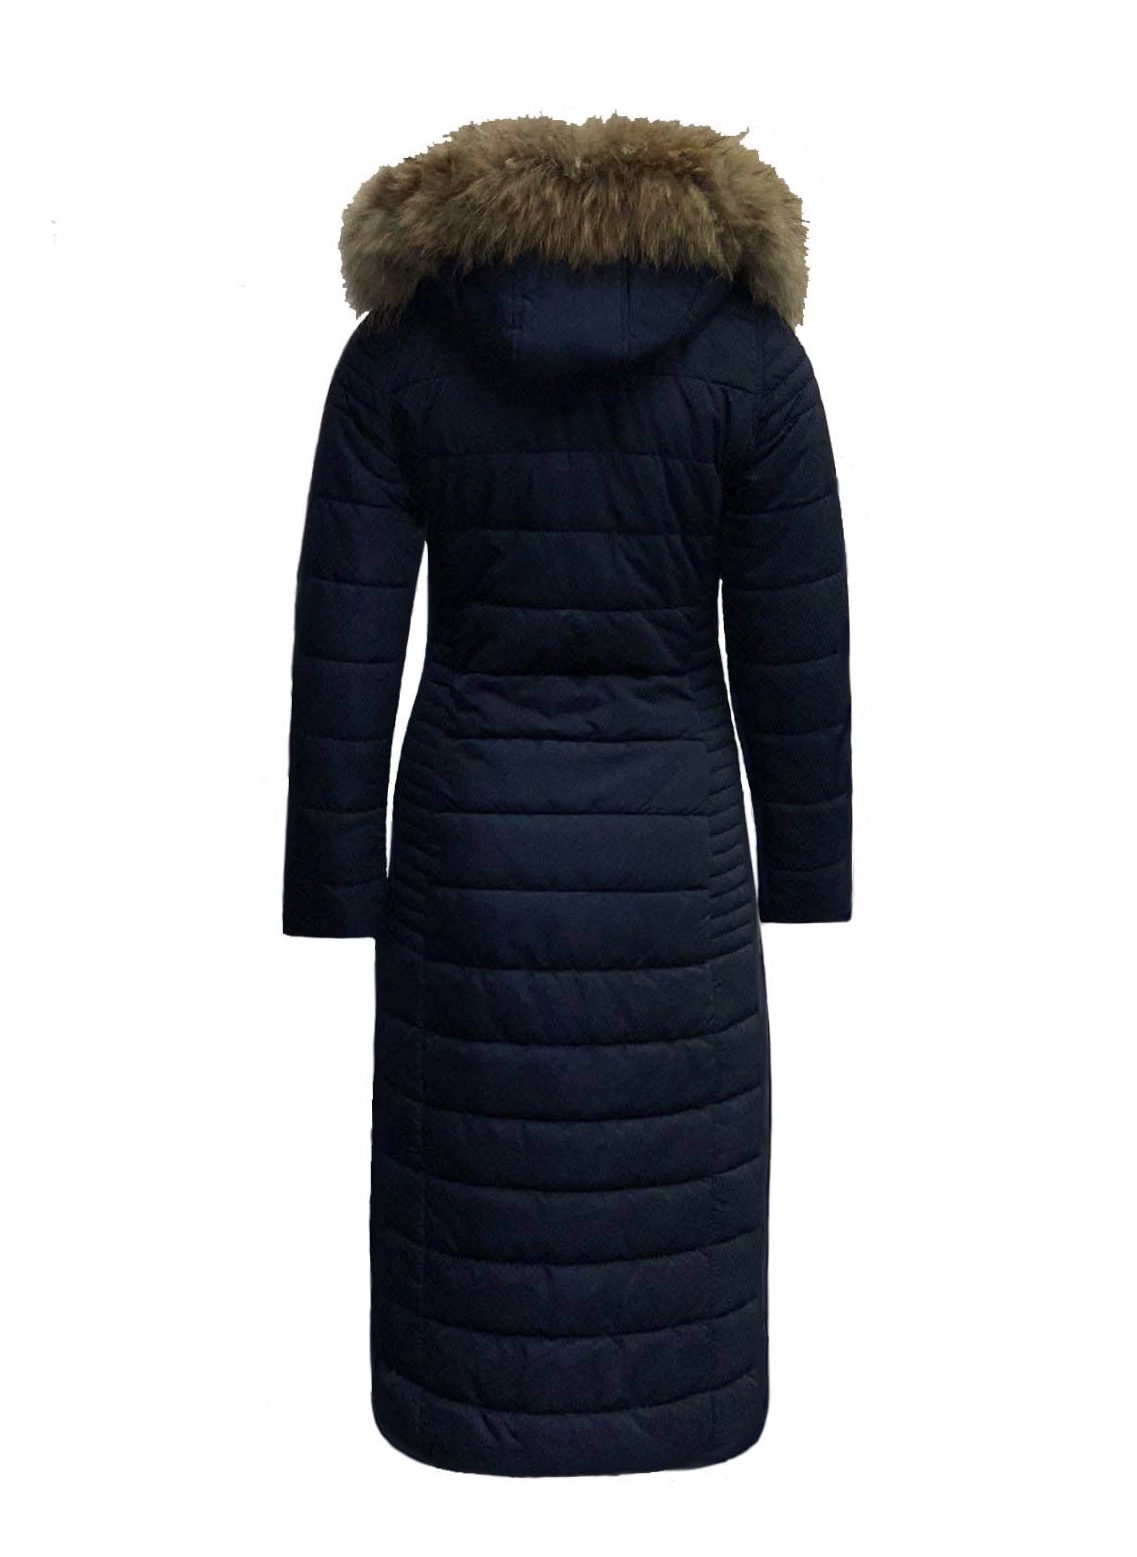 Digitaal op gang brengen Onderdrukker Lange dames winterjas met bontkraag blauw- Moskou – BK Leder